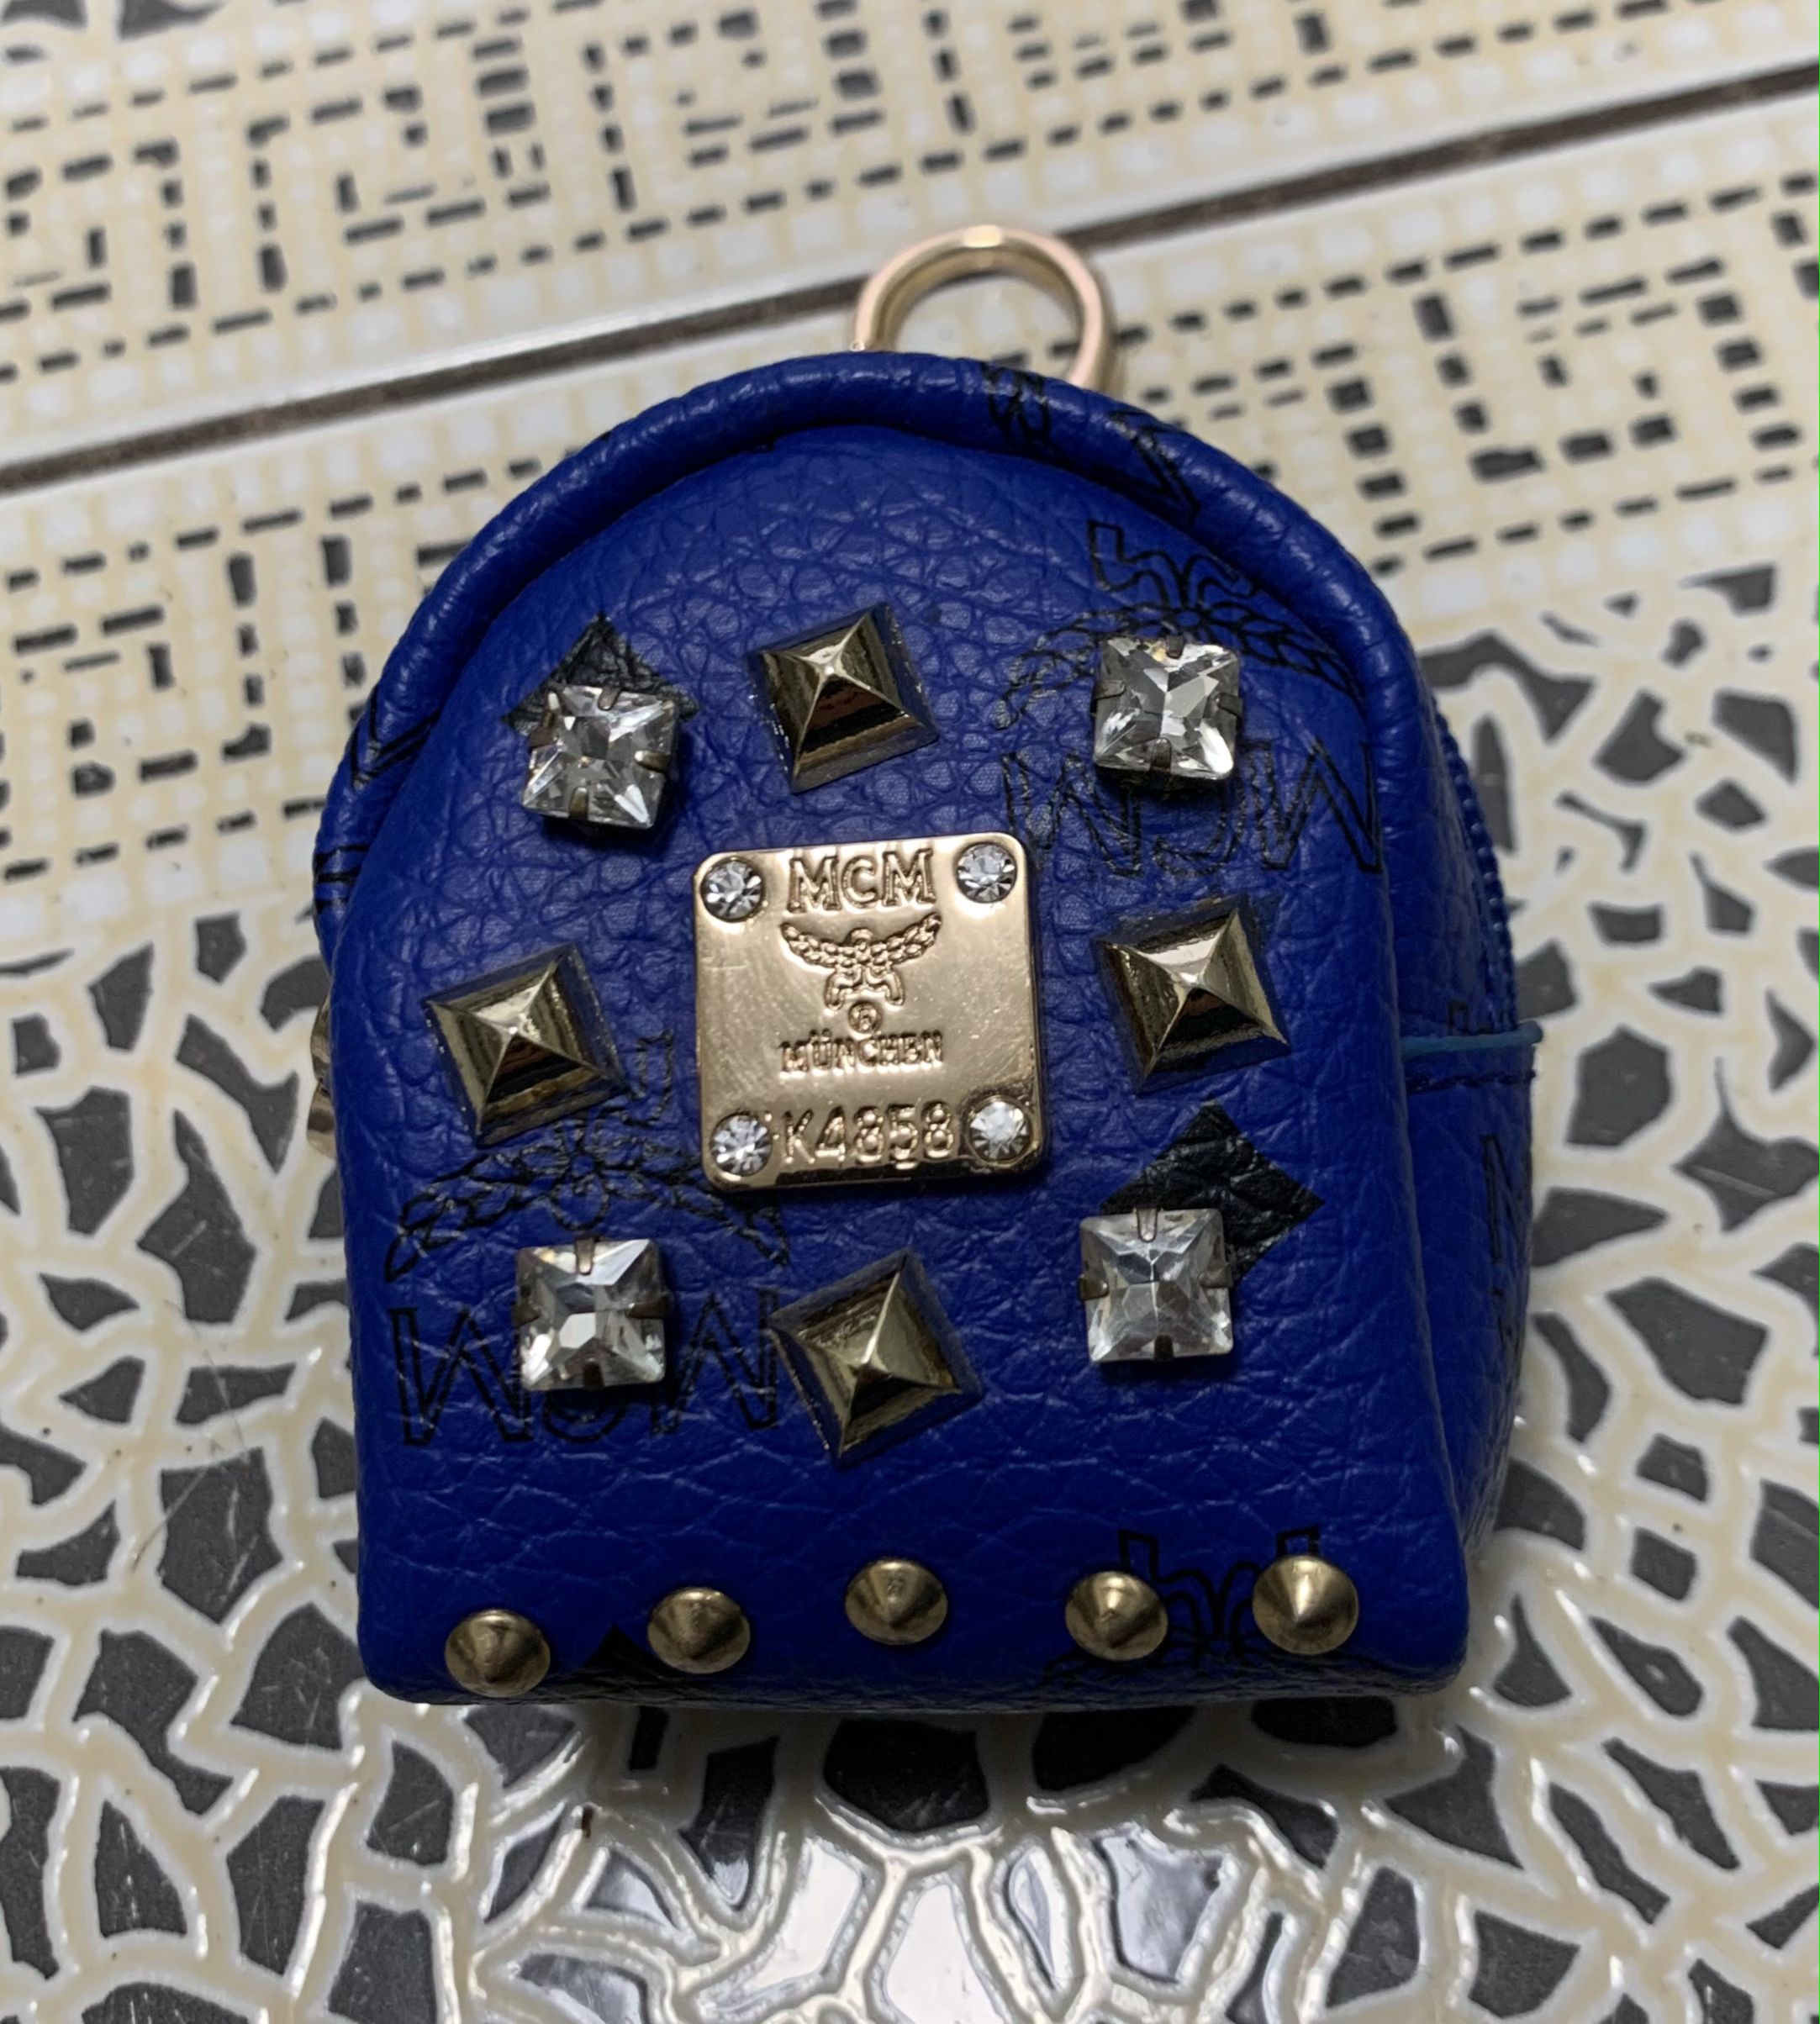 mcm mini backpack keychain